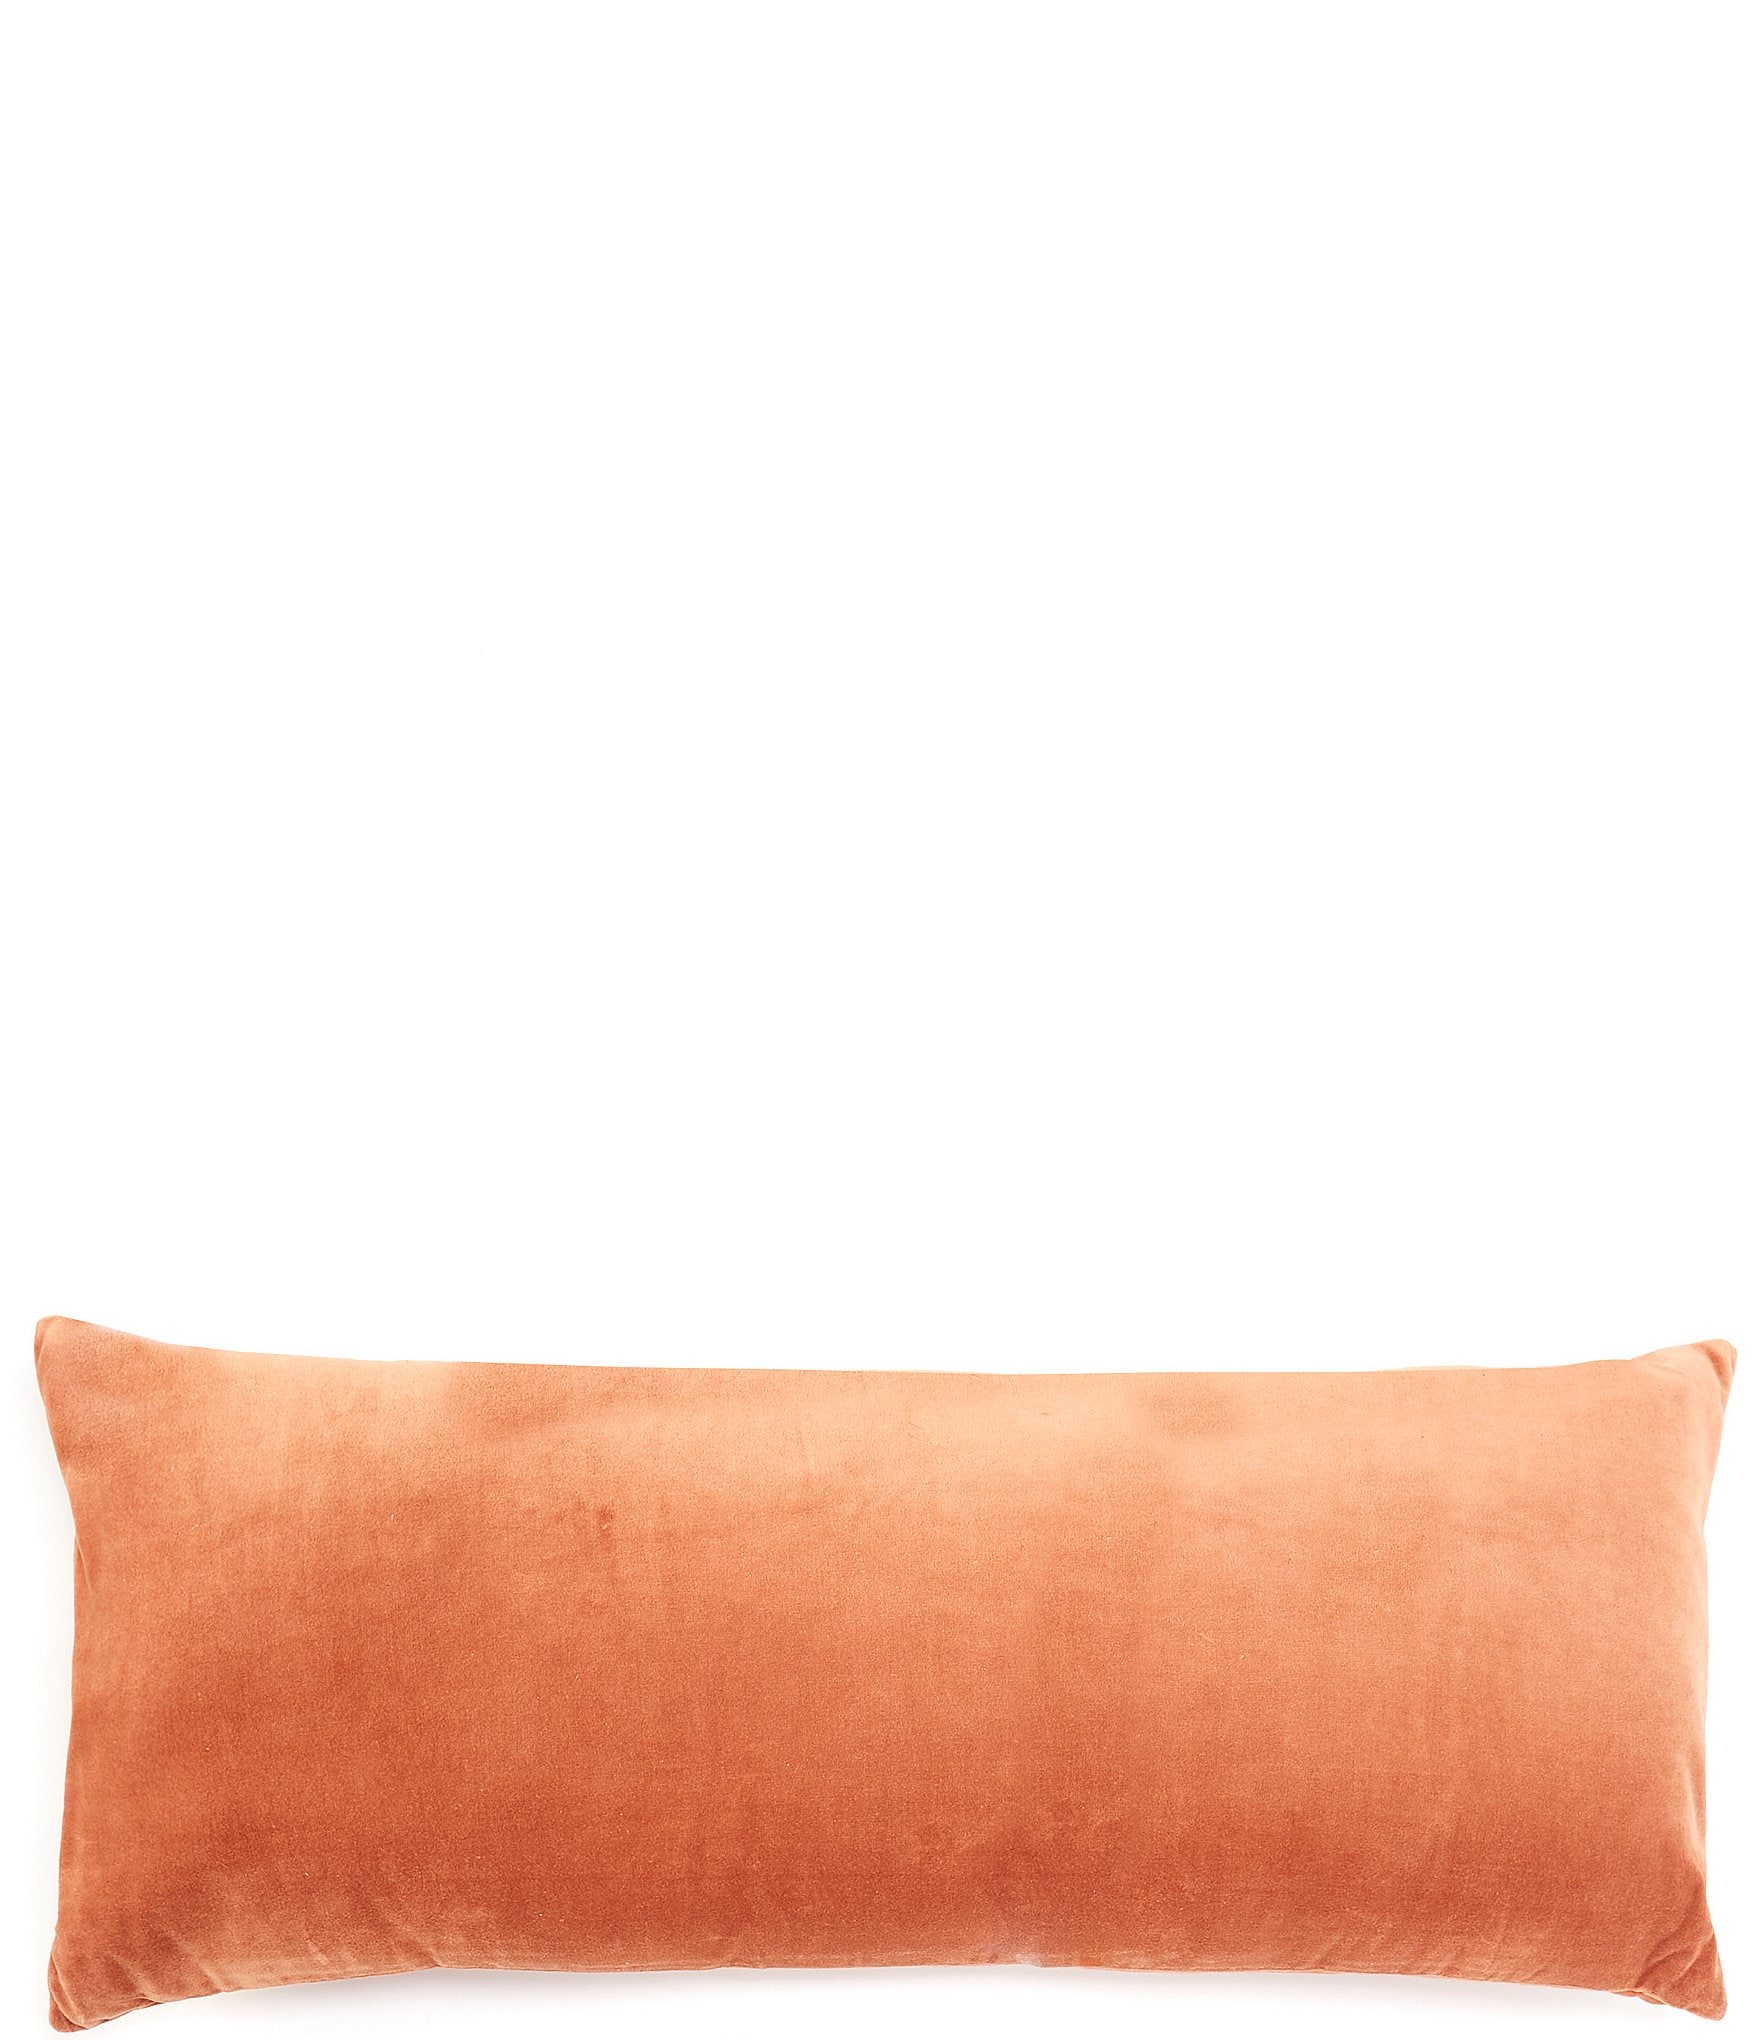 Southern Living Velvet & Linen Reversible Oversize Square Pillow